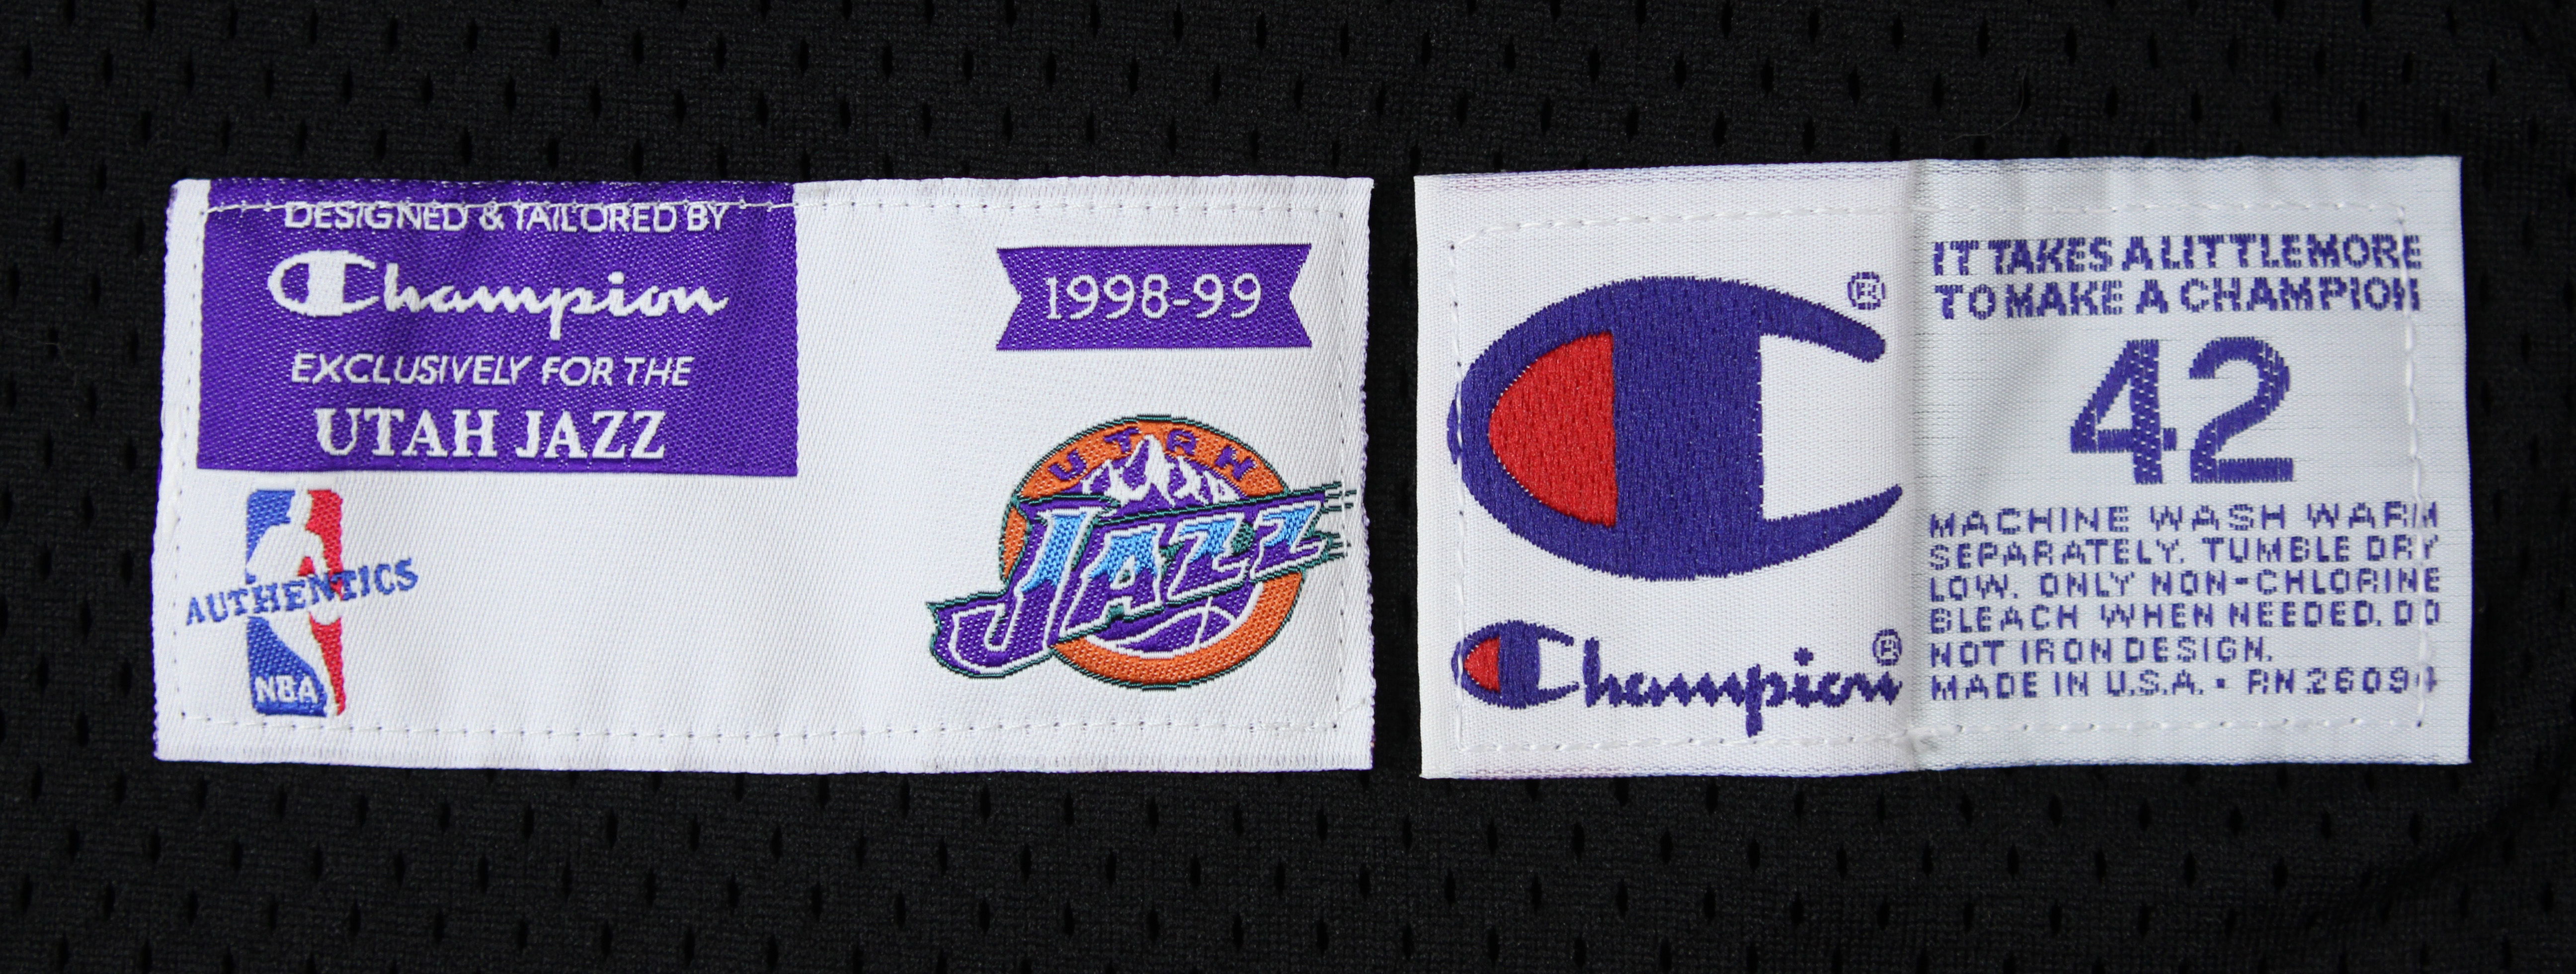 Lot Detail - 1998-99 John Stockton Utah Jazz Game Worn Alternate